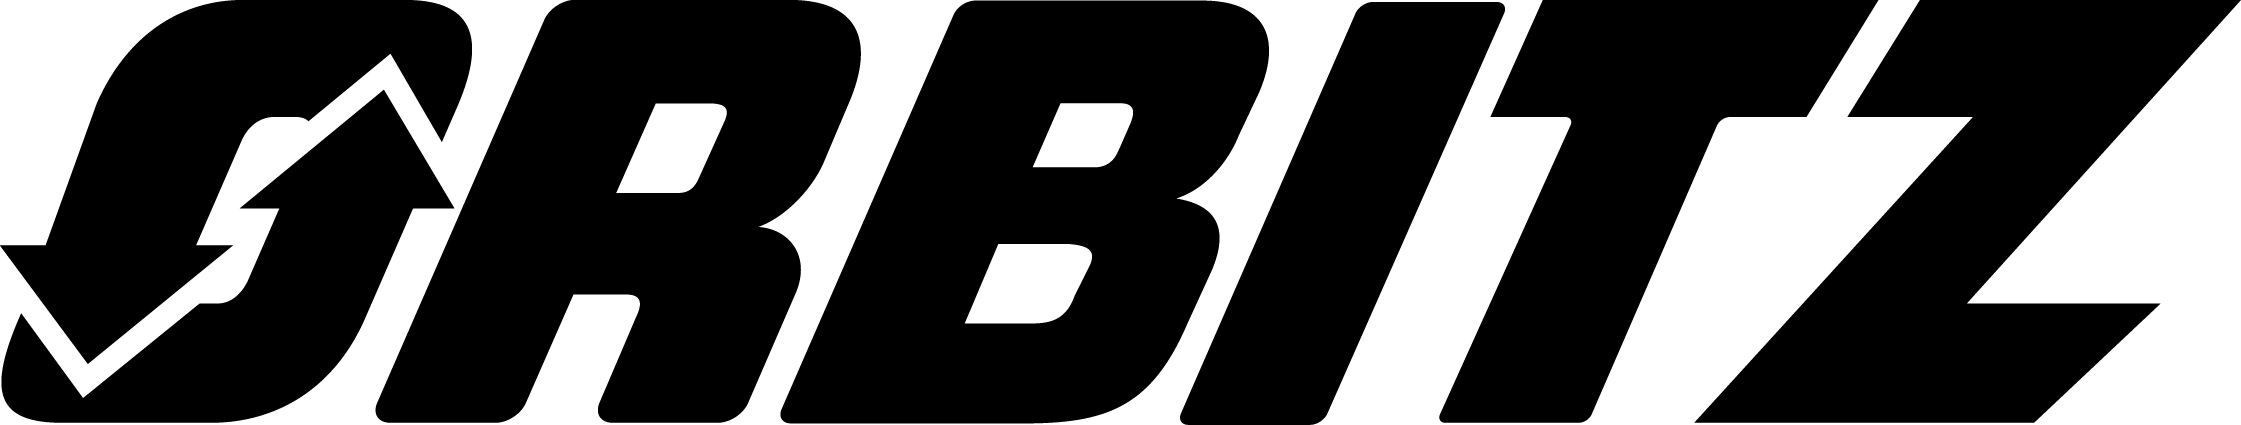 Logo_Orbitz_Black.jpg